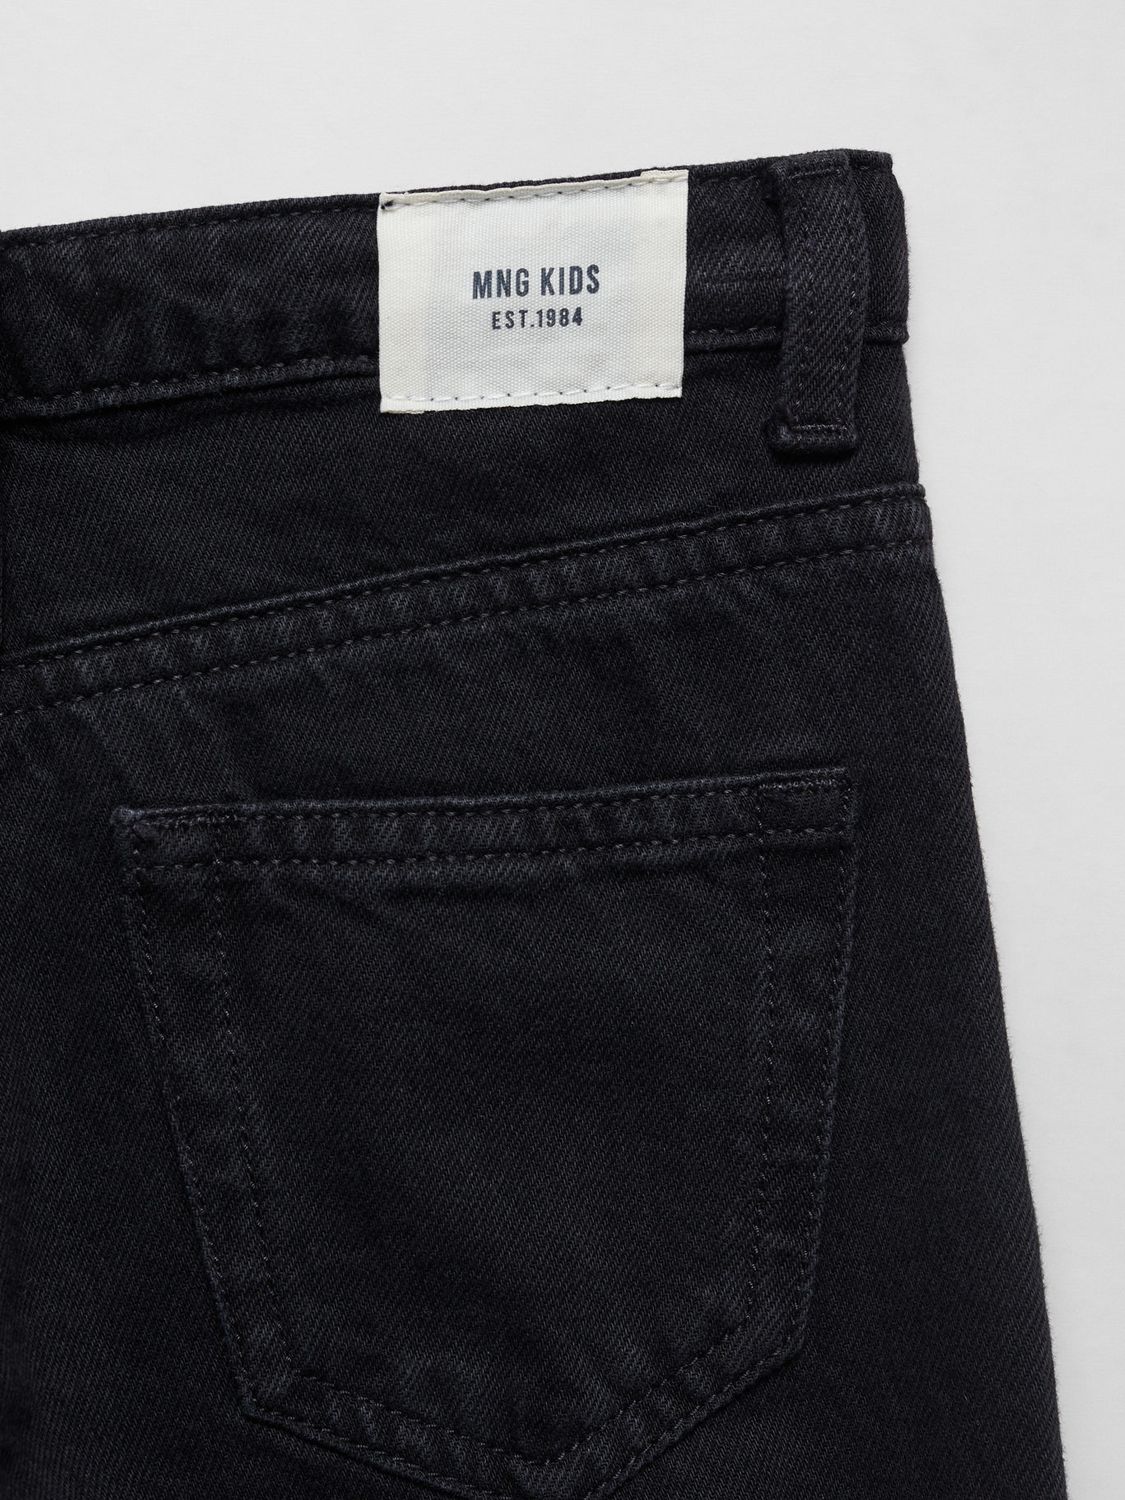 Mango Kids' Culotte Jeans, Open Grey, 8 years